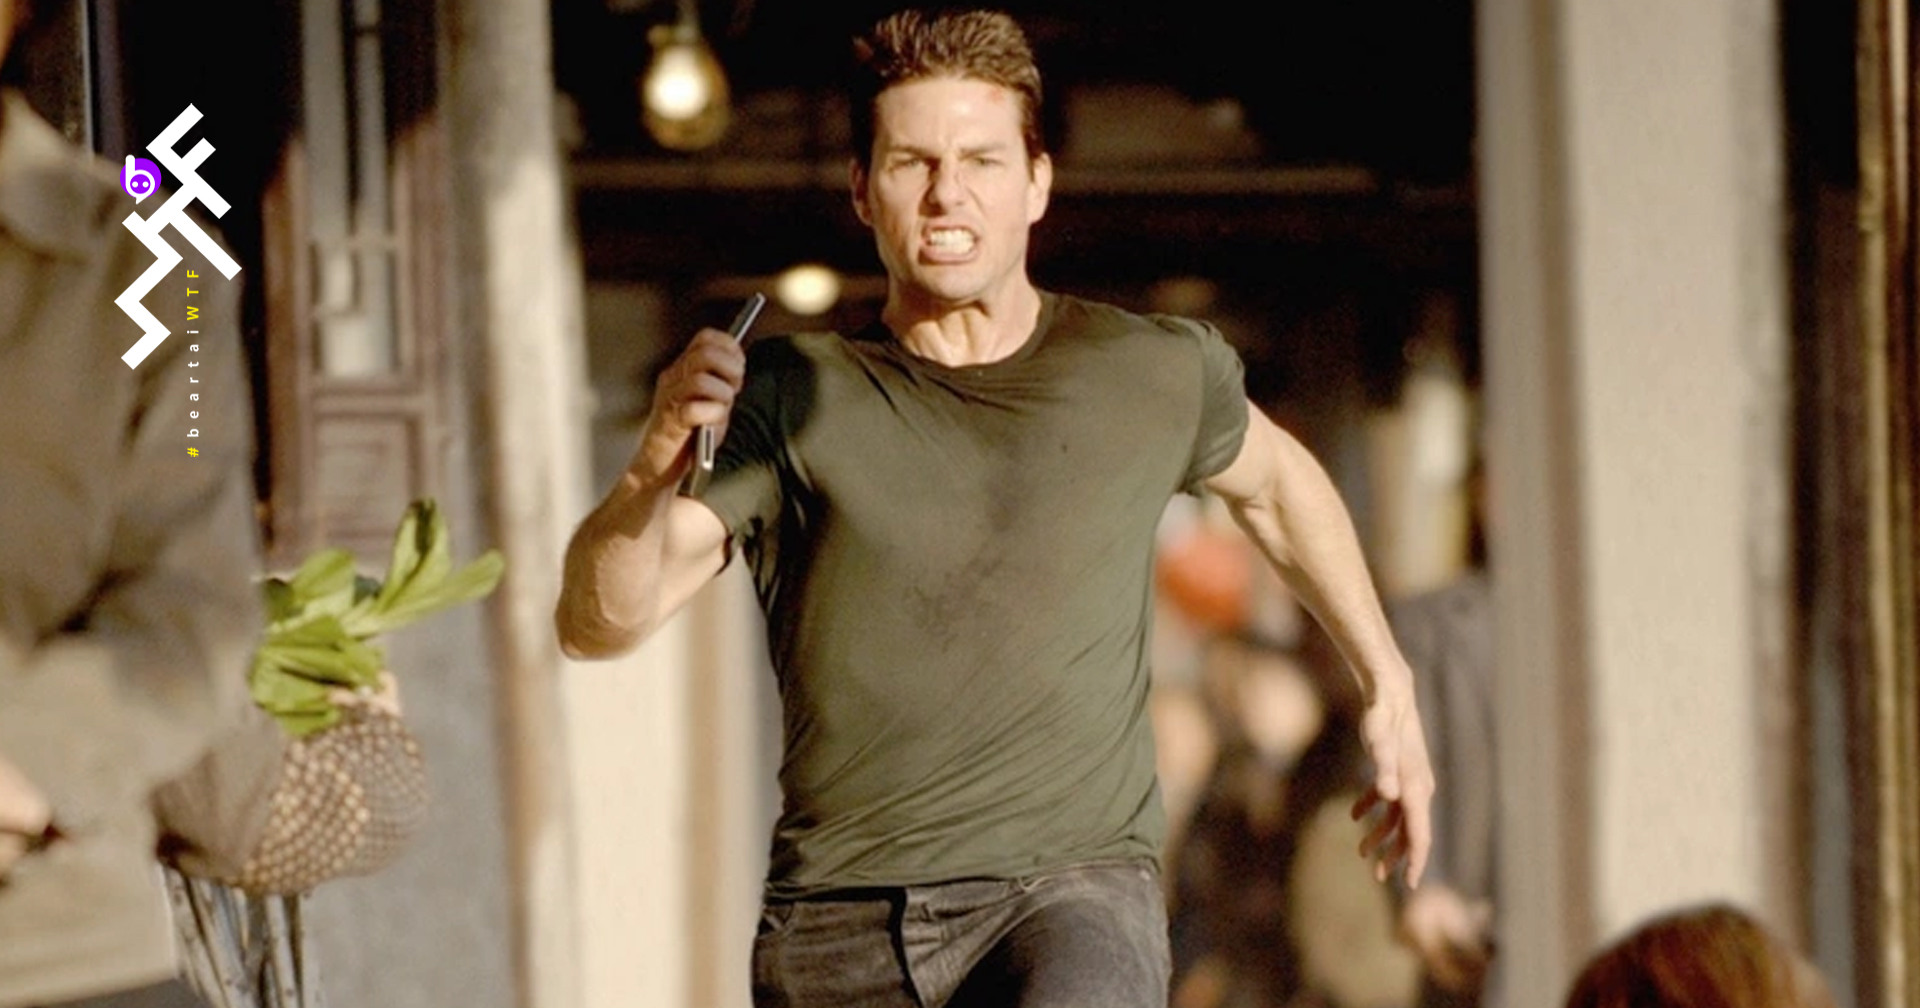 Tom Cruise ไม่อนุญาต! ให้ใครมาวิ่งขนาบเขาในหนังที่เป็นพระเอก